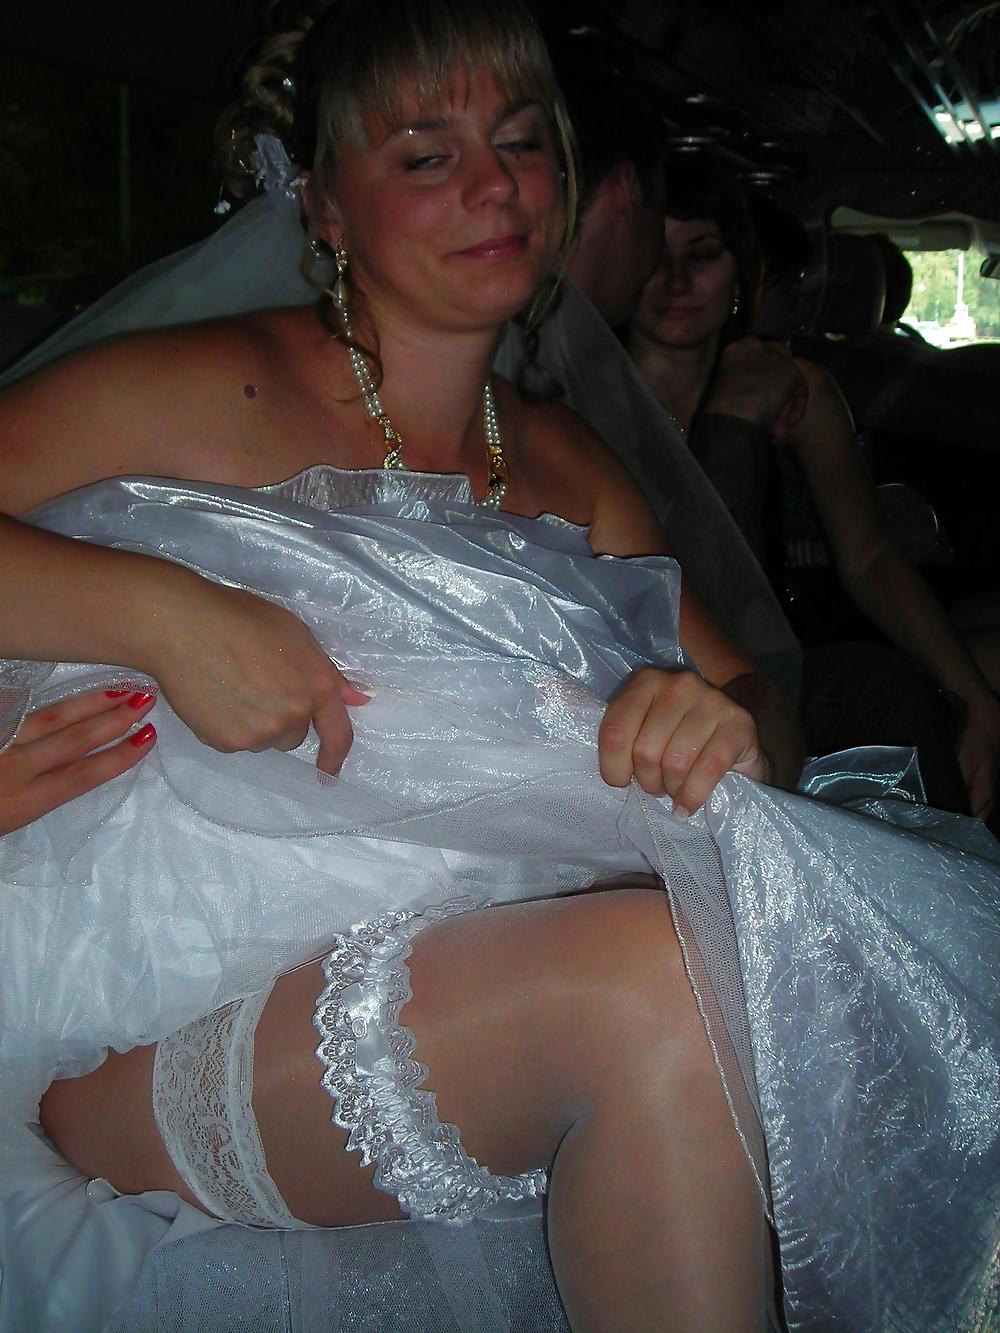 Sex Wedding-Bride upskirt image